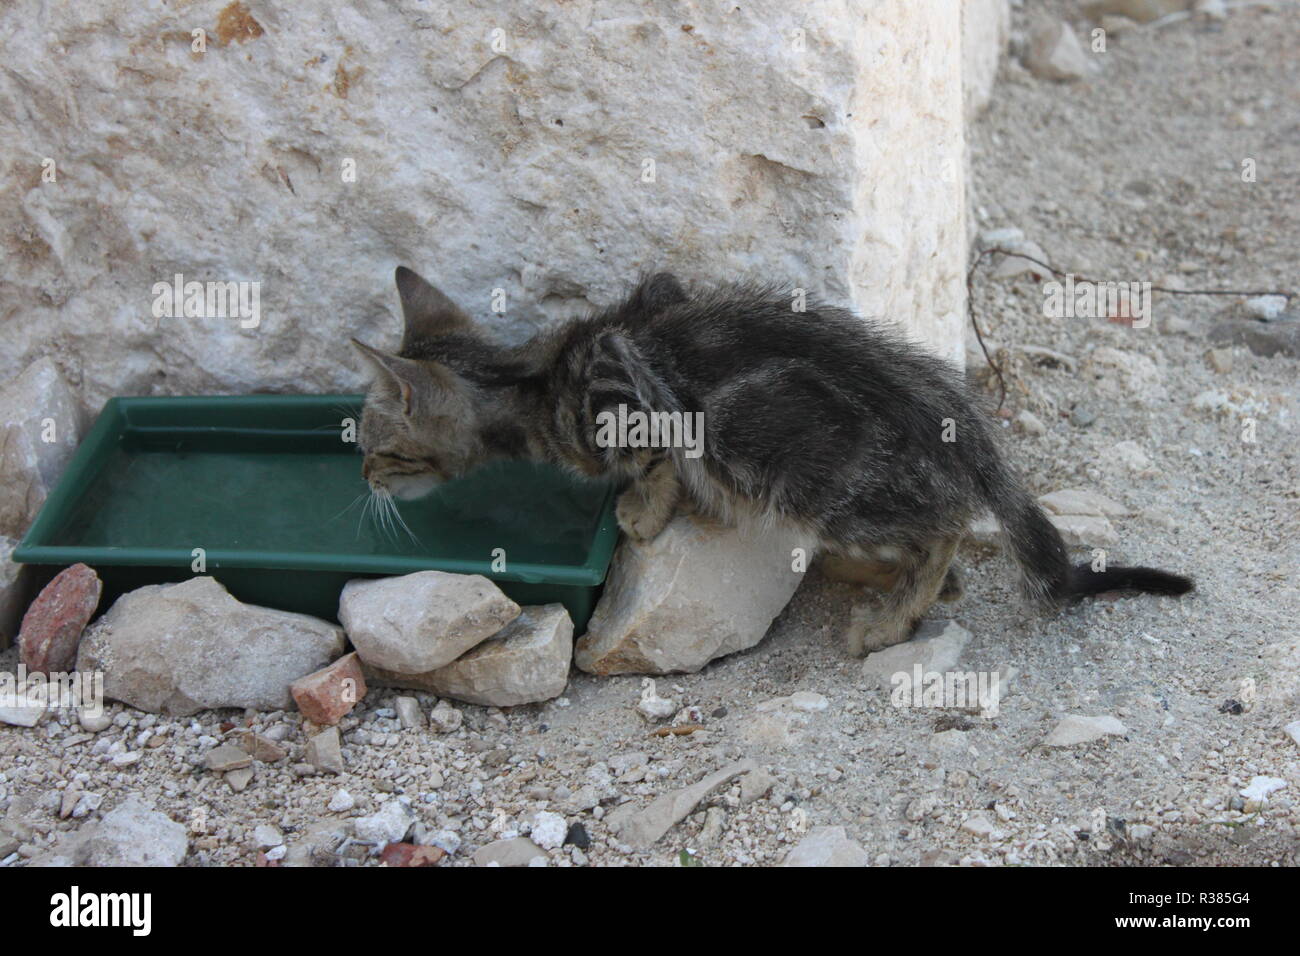 savaged kitten drinking water Stock Photo